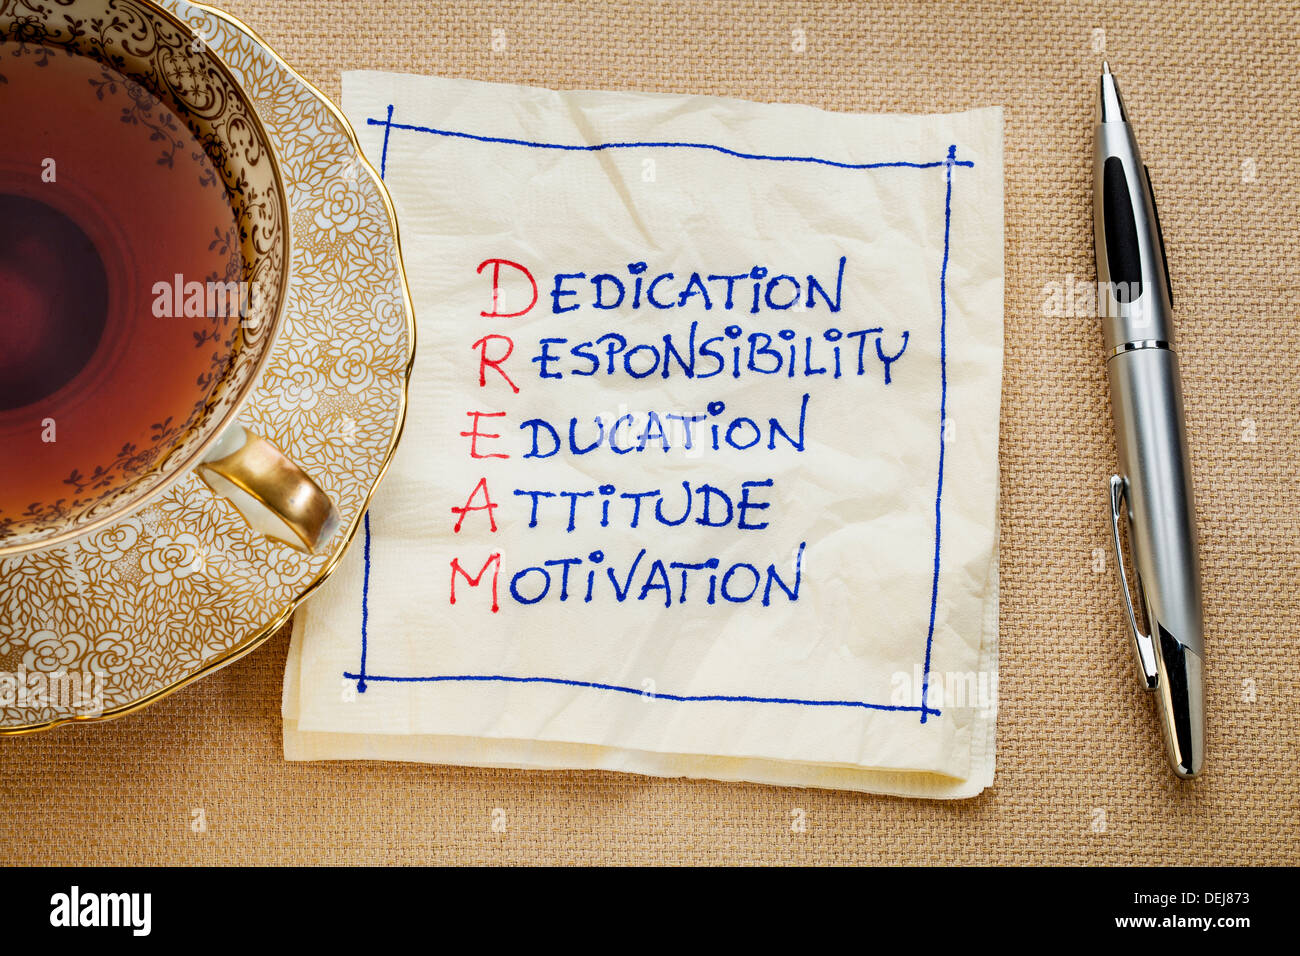 Engagement, Verantwortung, Ausbildung, Einstellung, Motivation - Traum Akronym - eine Serviette Doodle mit einer Tasse Tee Stockfoto